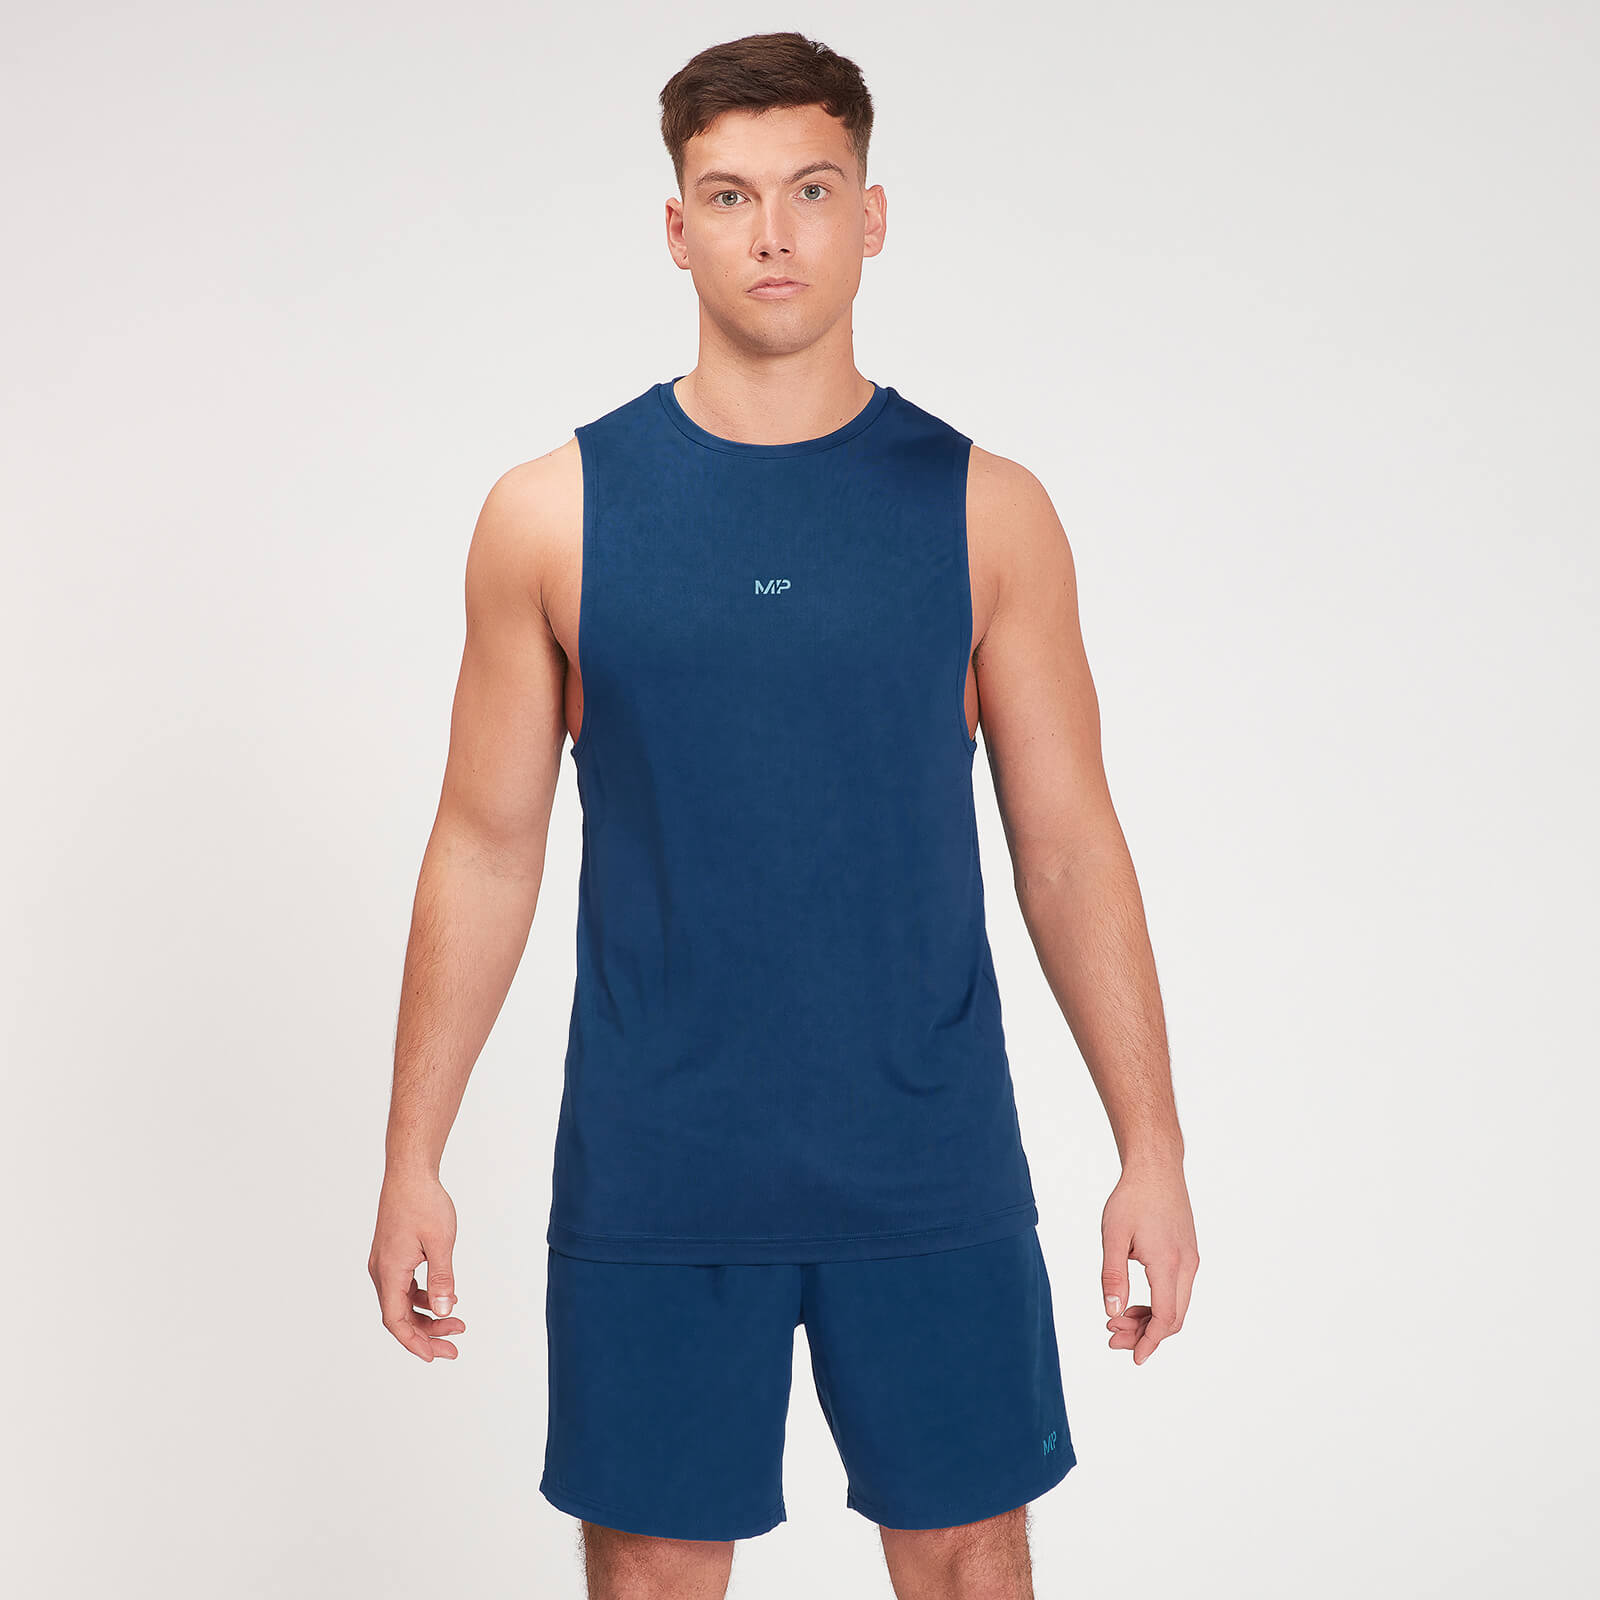 Camiseta sin mangas de entrenamiento Fade Graphic para hombre de MP - Azul oscuro - XL